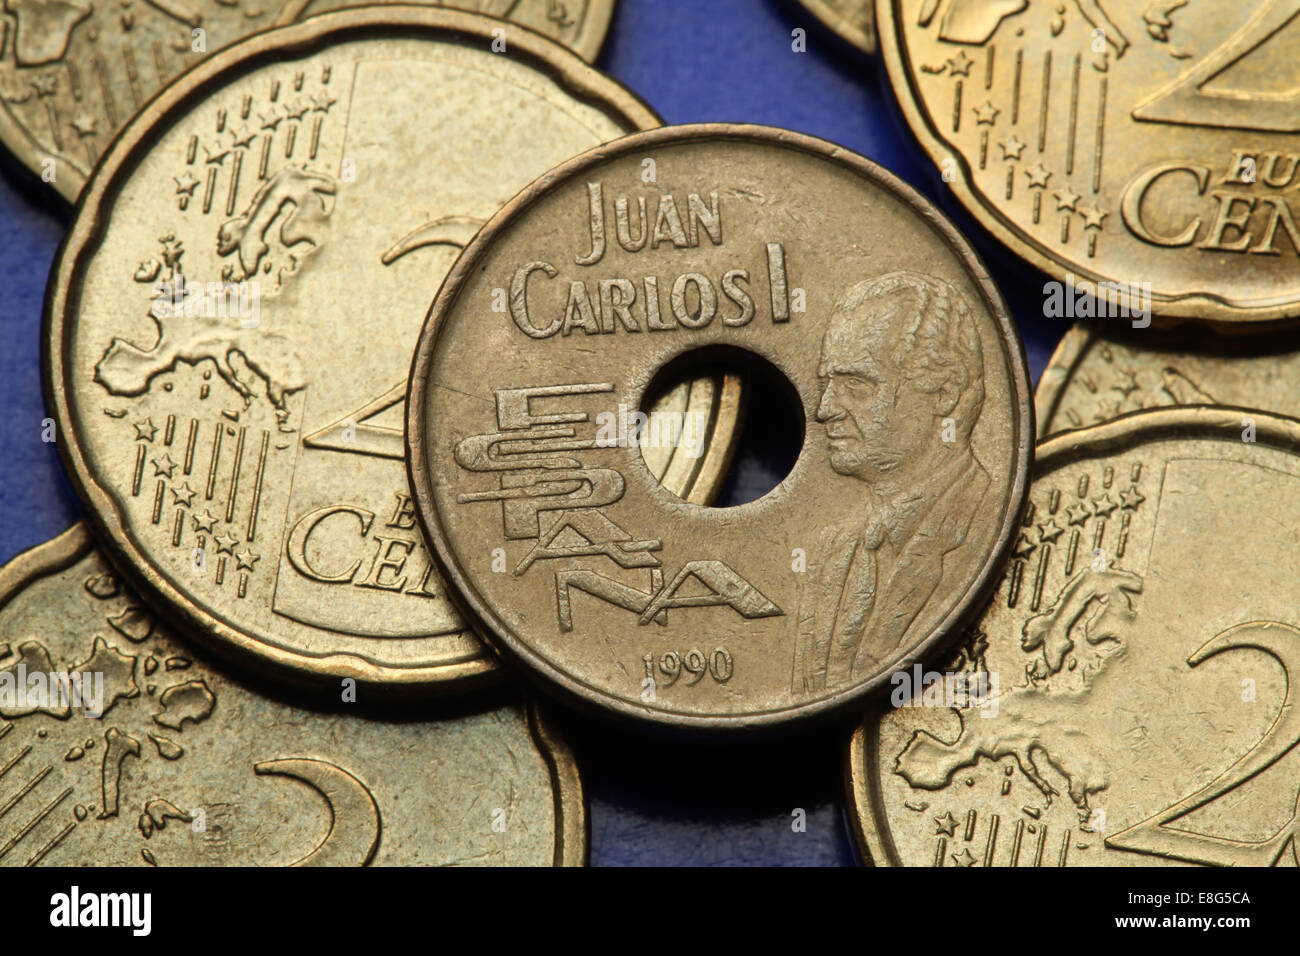 Münzen von Spanien. König Juan Carlos i. von Spanien in die alte spanische 25 Peseten-Münze abgebildet. Stockfoto